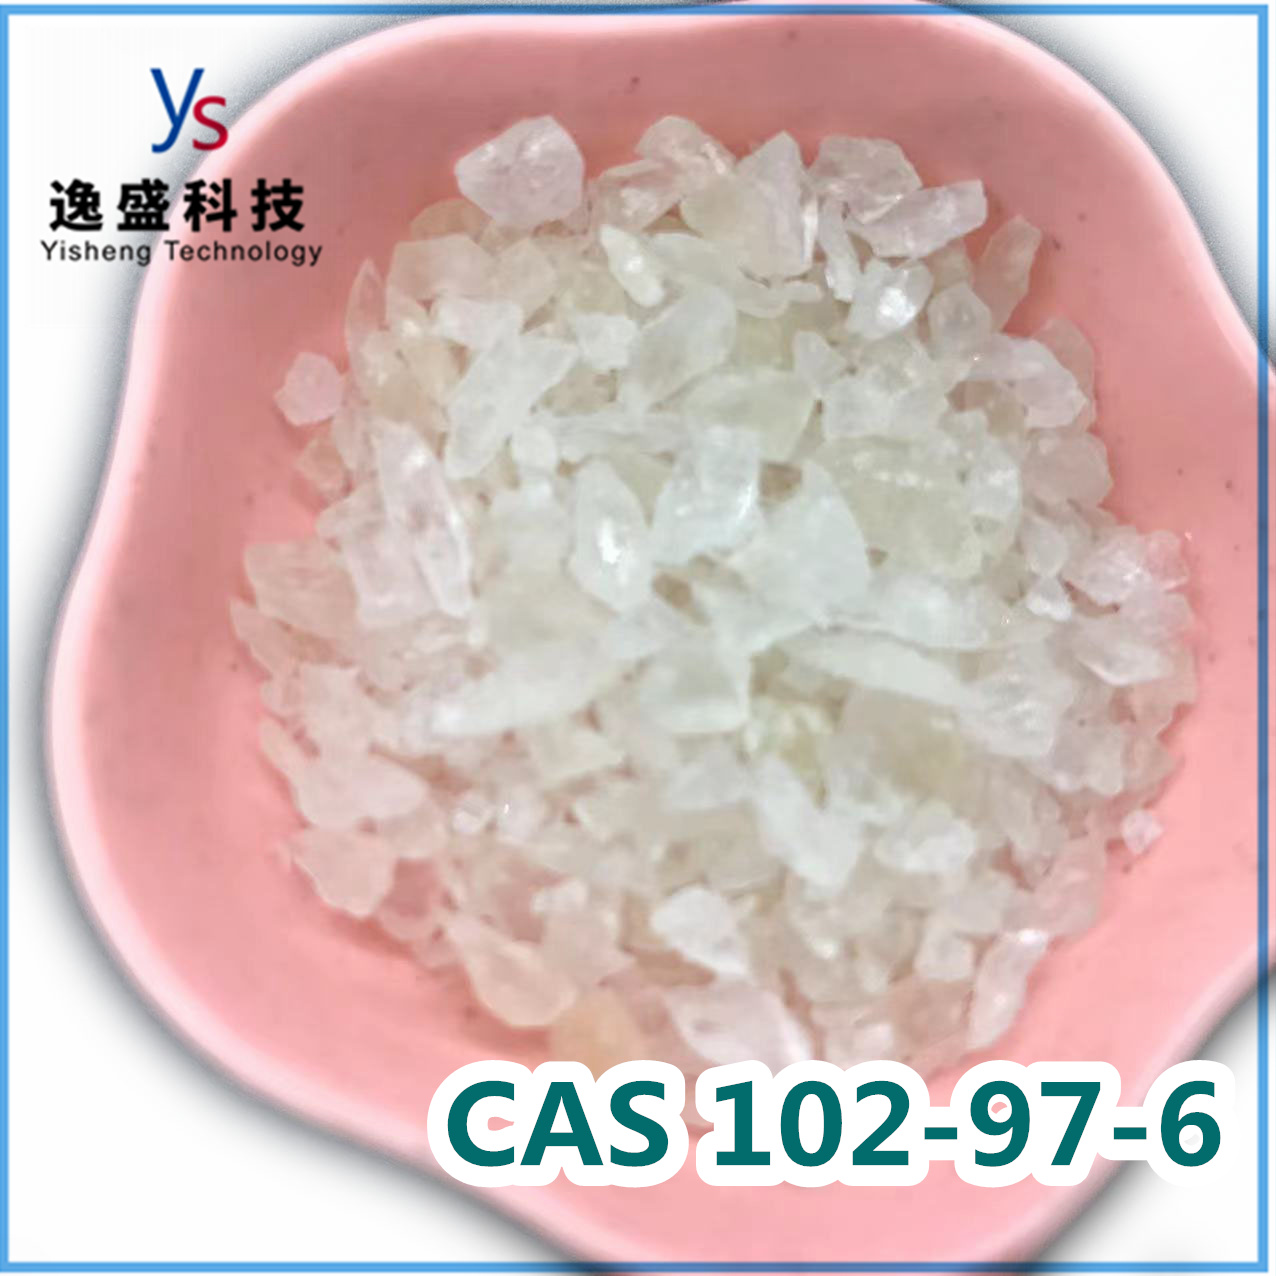  Cas 102-97-6 Polvo de calidad superior de bencilisopropilamina